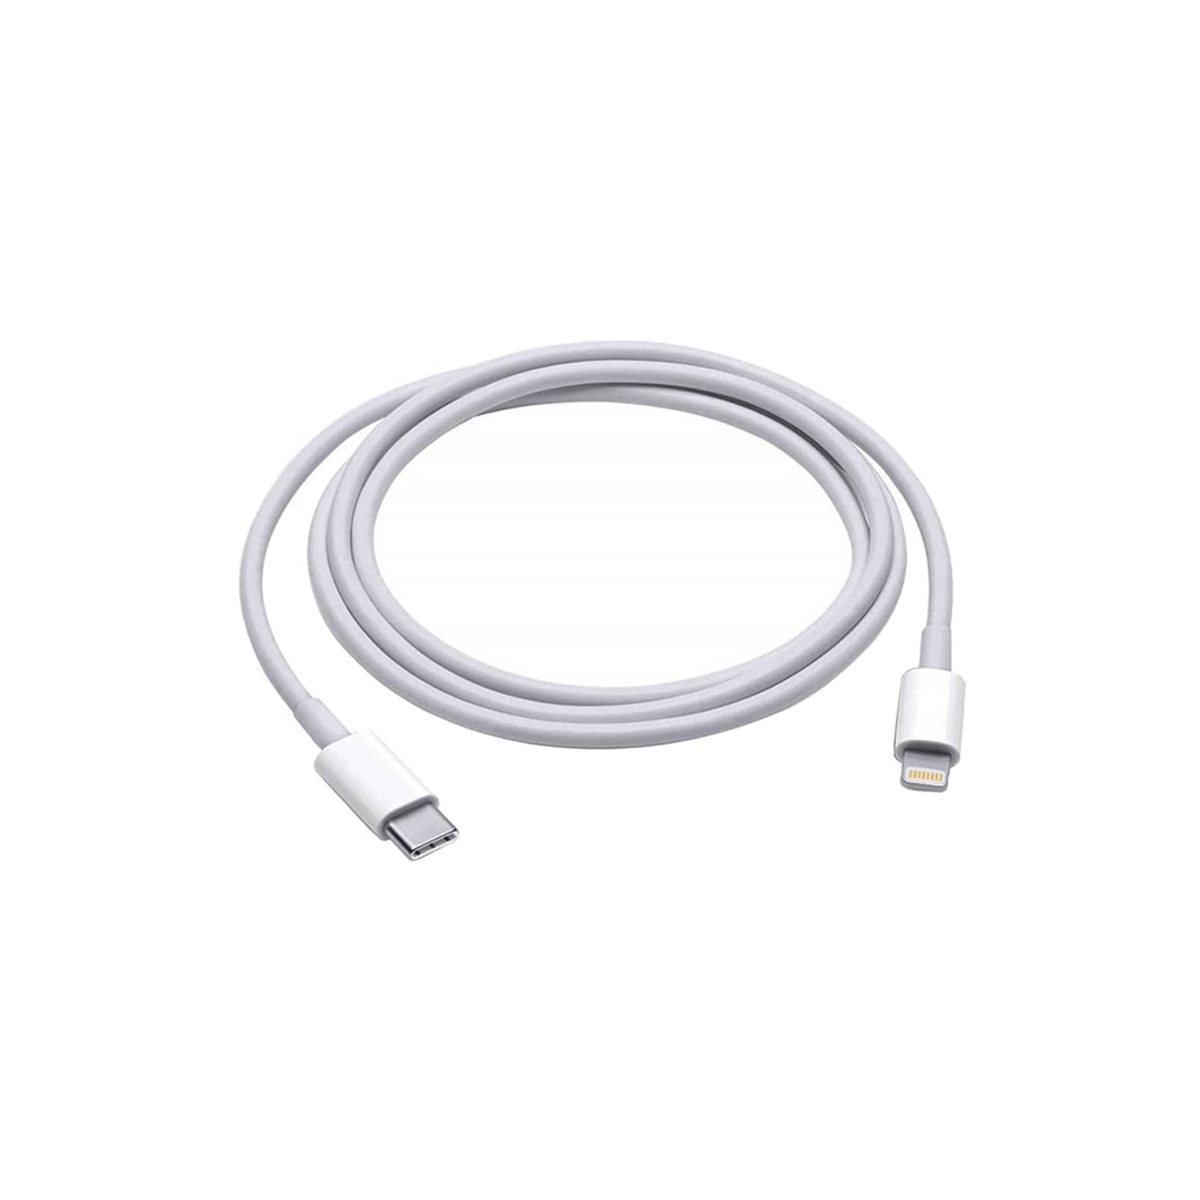 Cable de carga Compatible con iPhone USB-C a Lightning 1metro